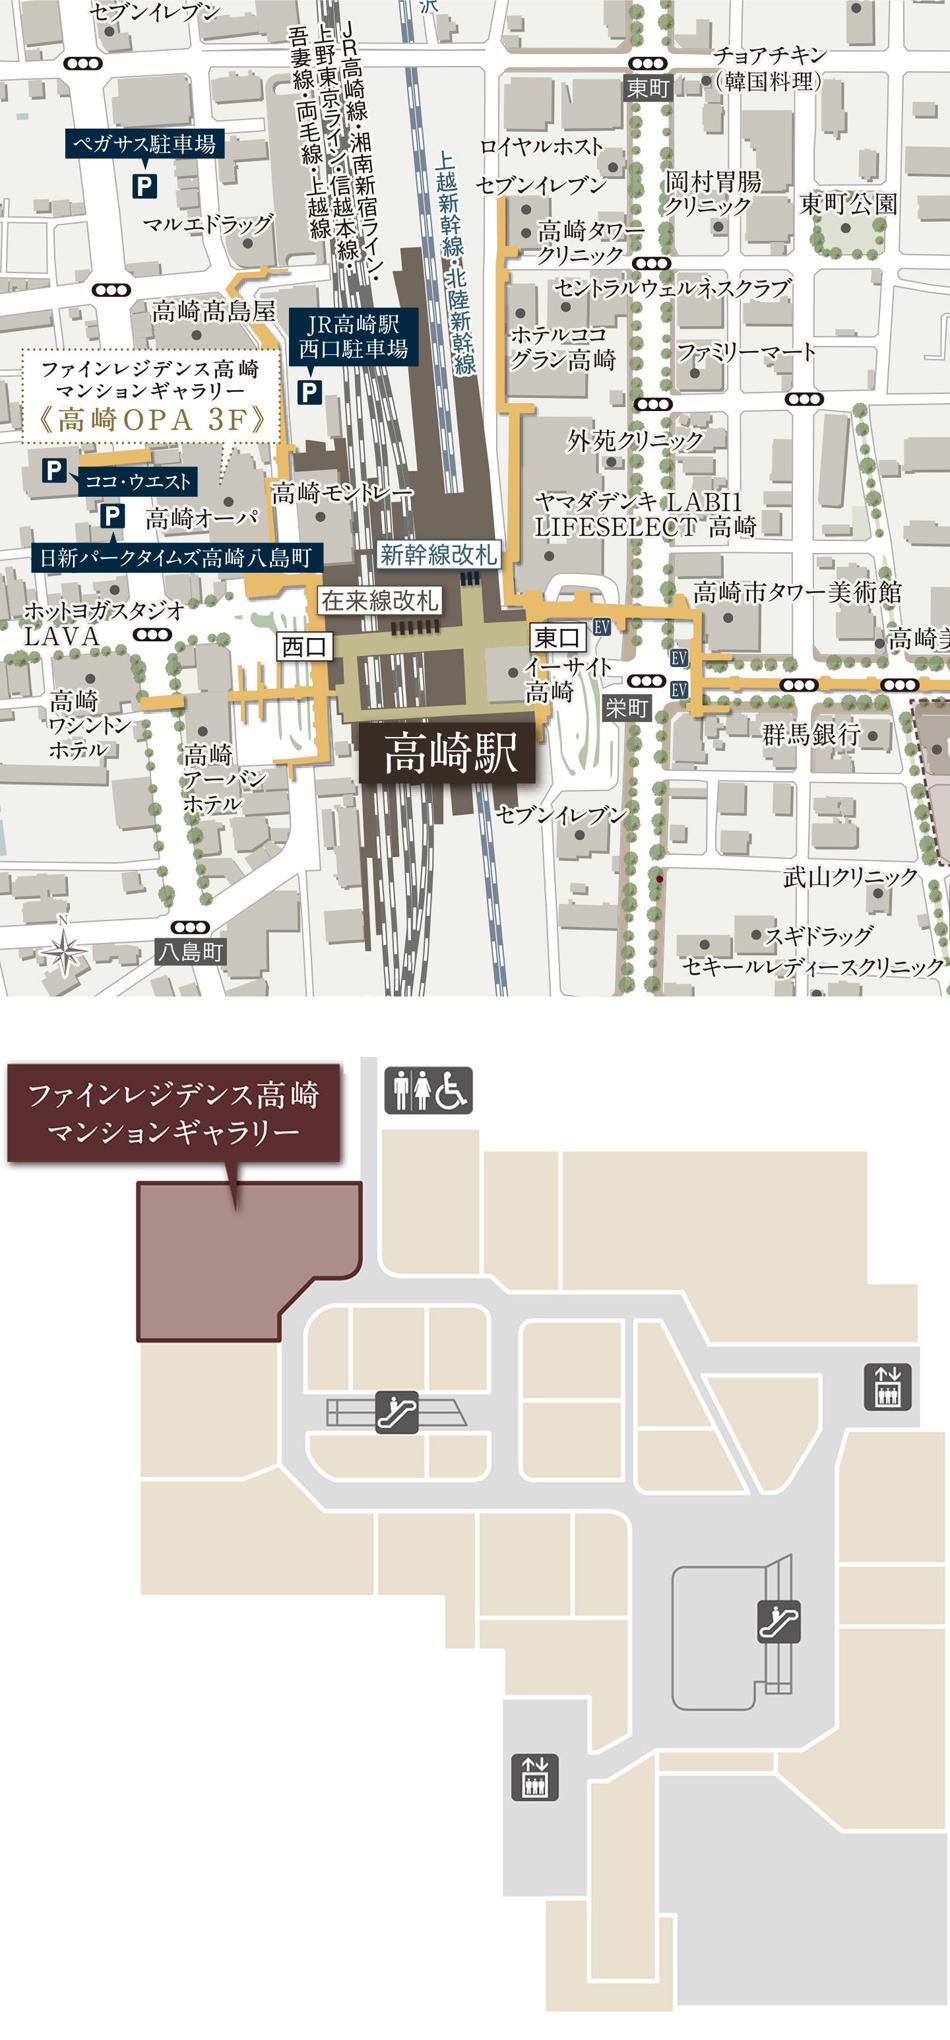 ファインレジデンス高崎鞘町のモデルルーム案内図